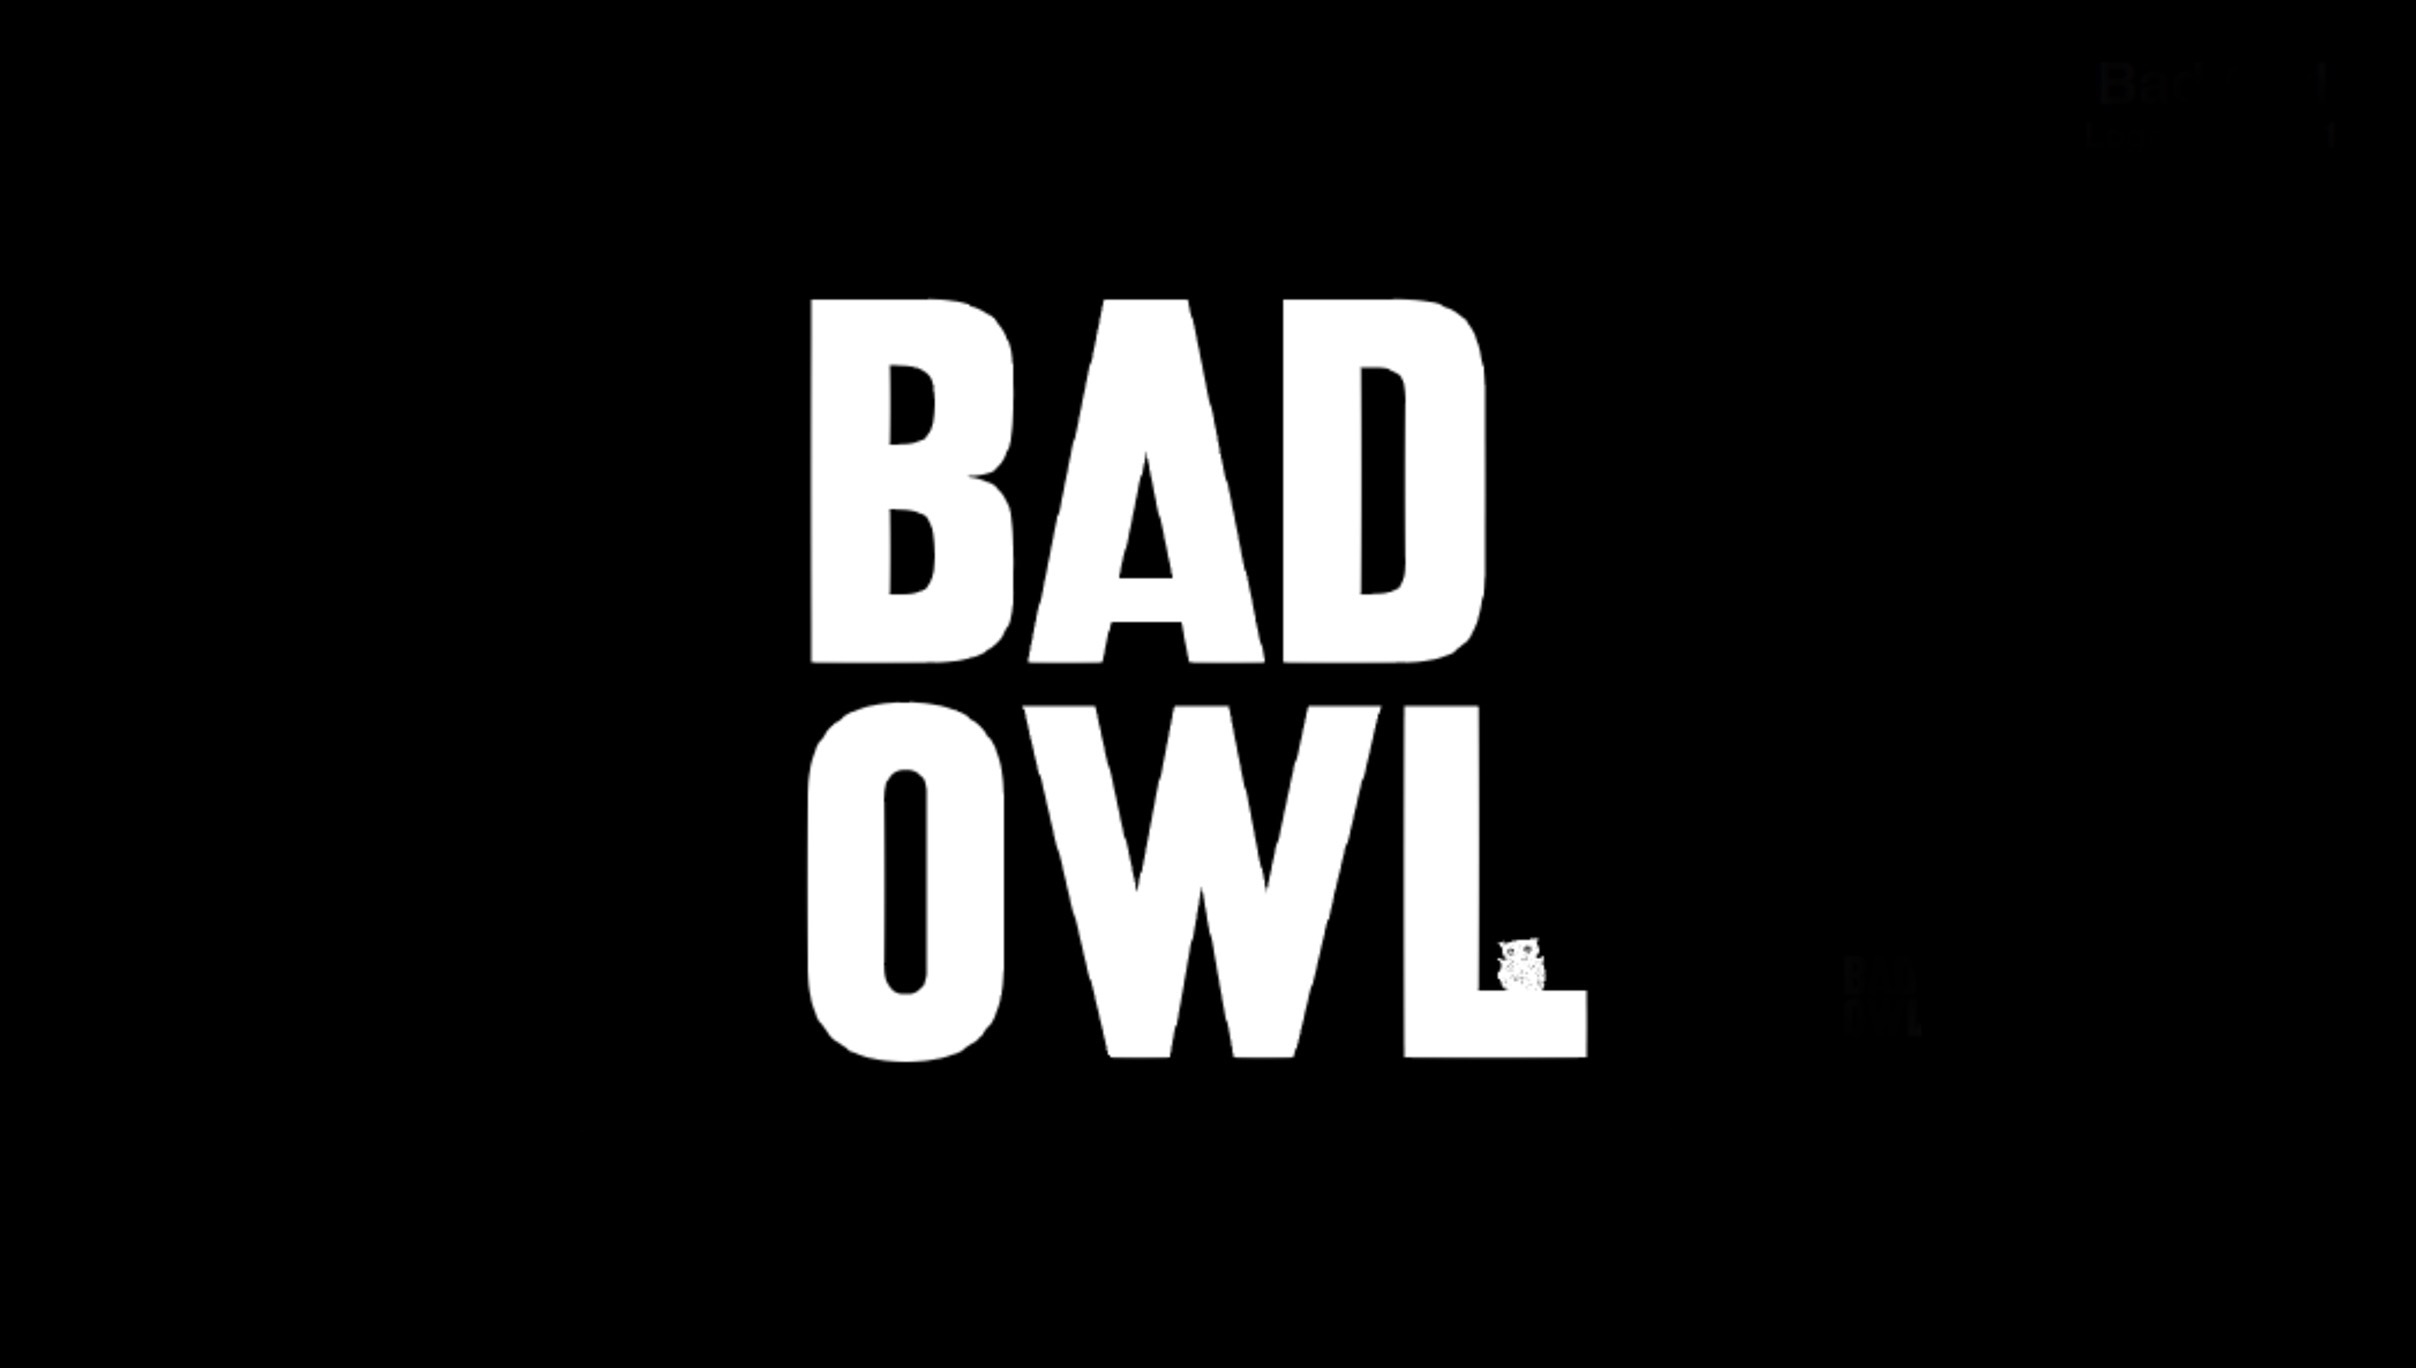 BAD OWL 